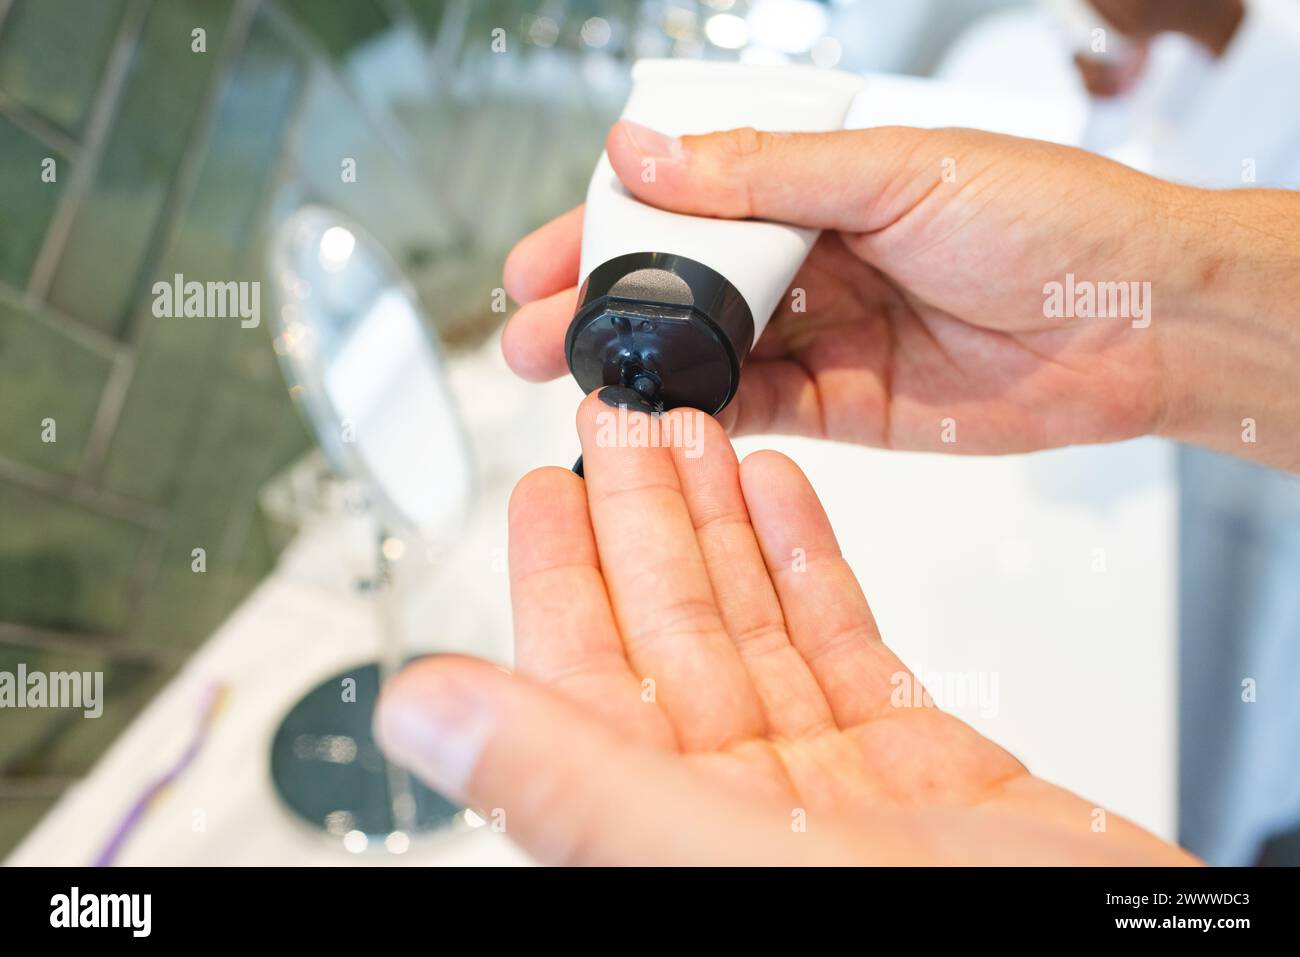 Eine Person spendet Gesichtsreiniger aus einer Flasche auf ihre Hand im Badezimmer Stockfoto